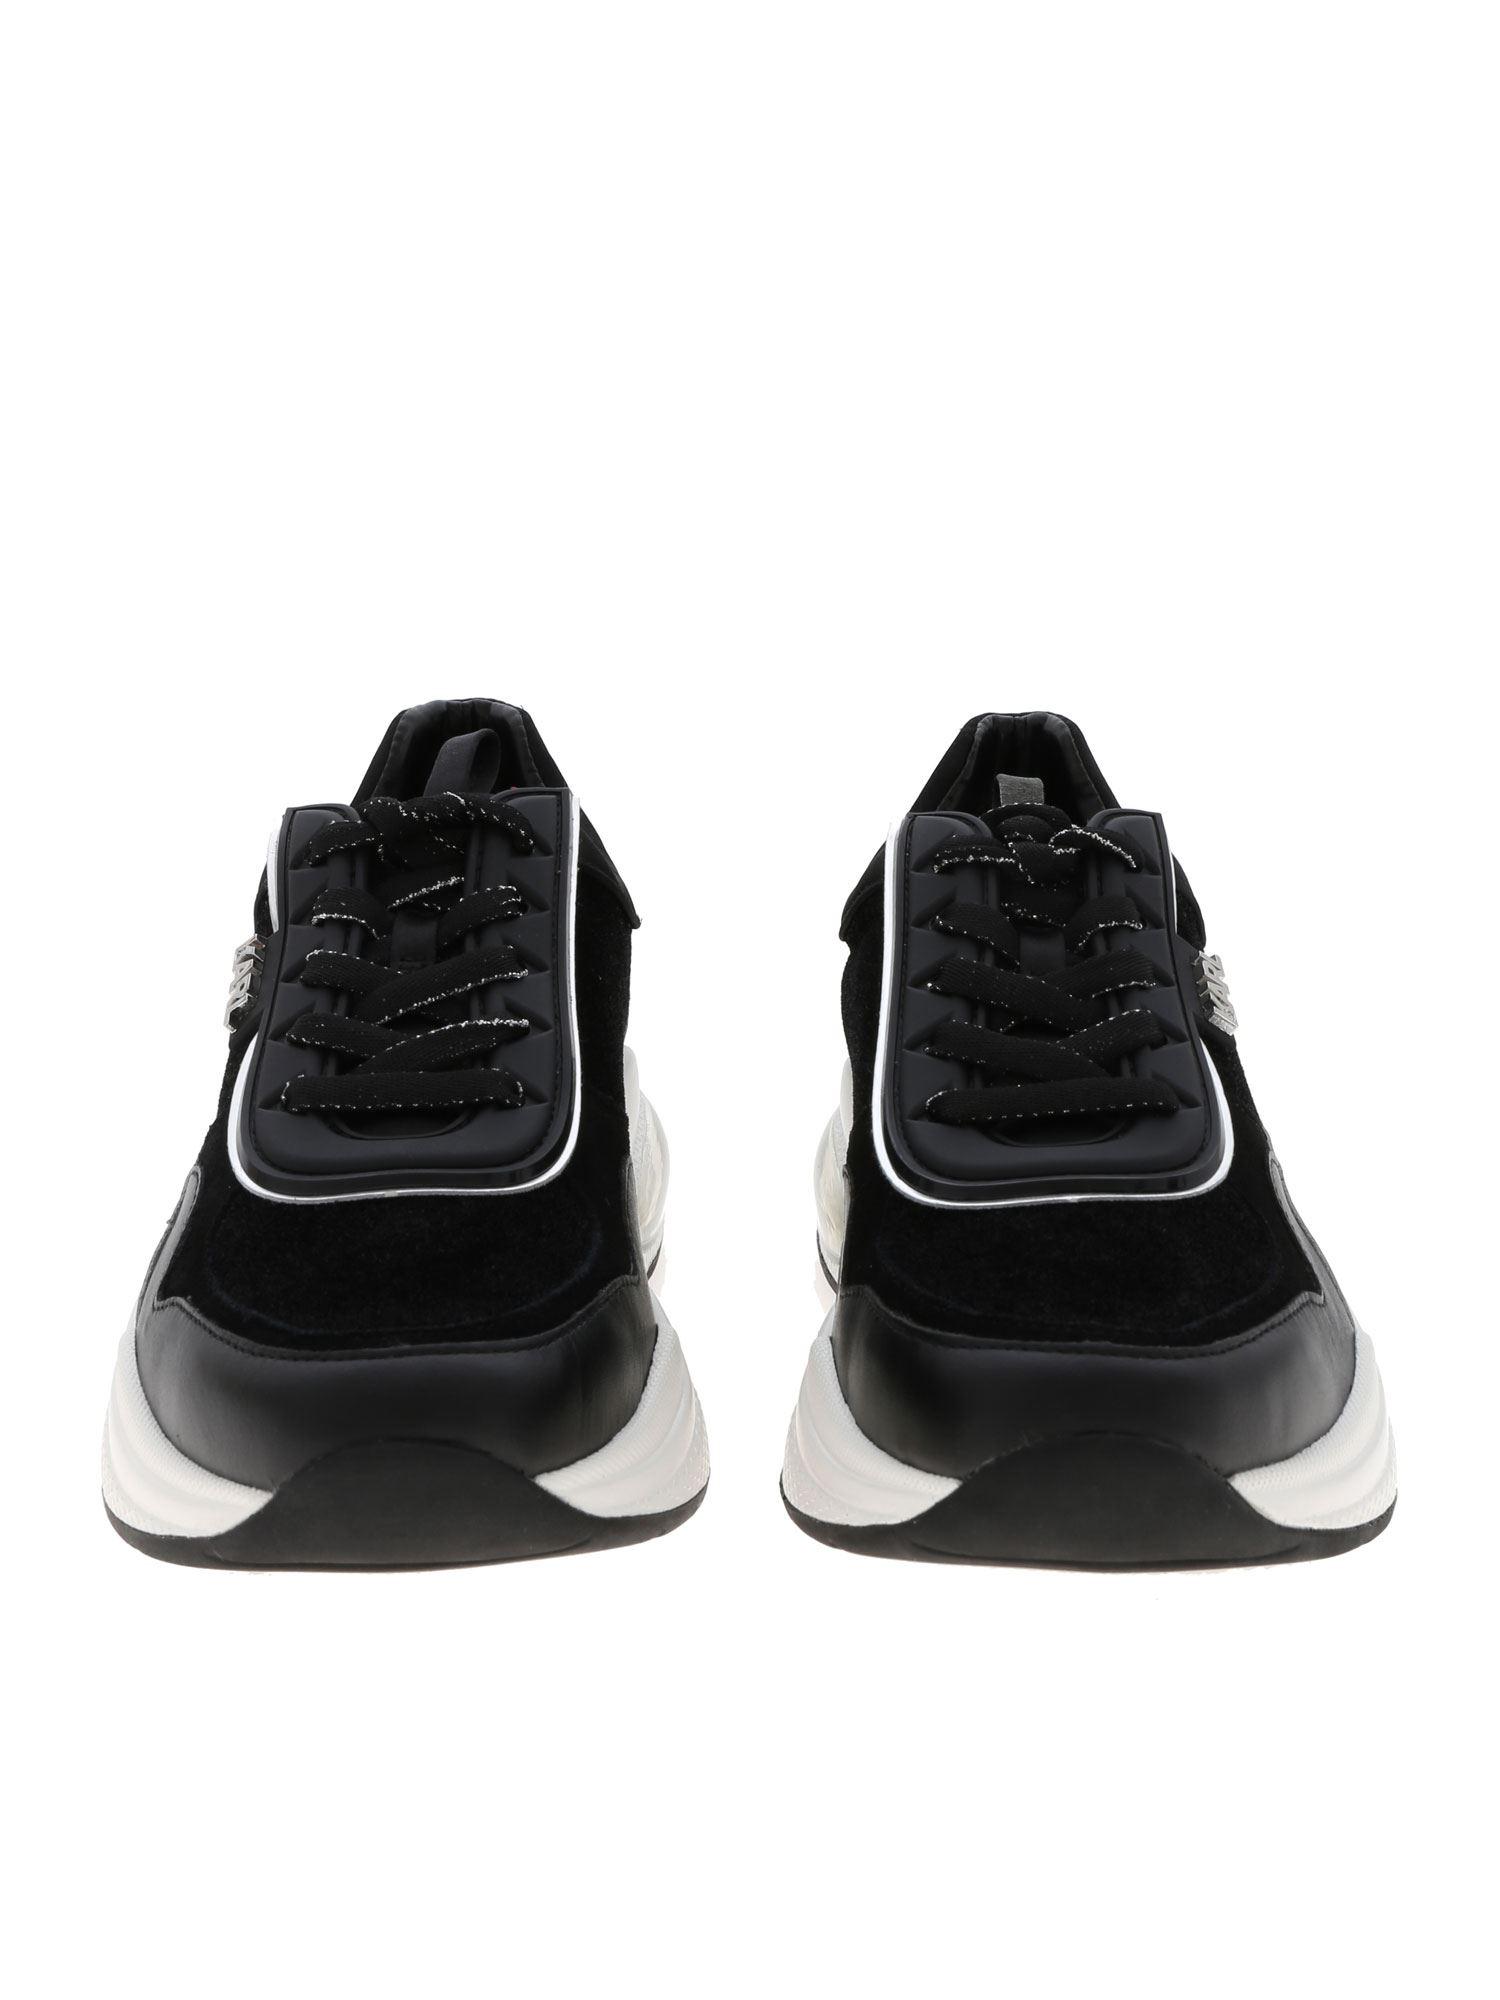 Karl Lagerfeld Leather Ventura Sneakers In Black - Lyst